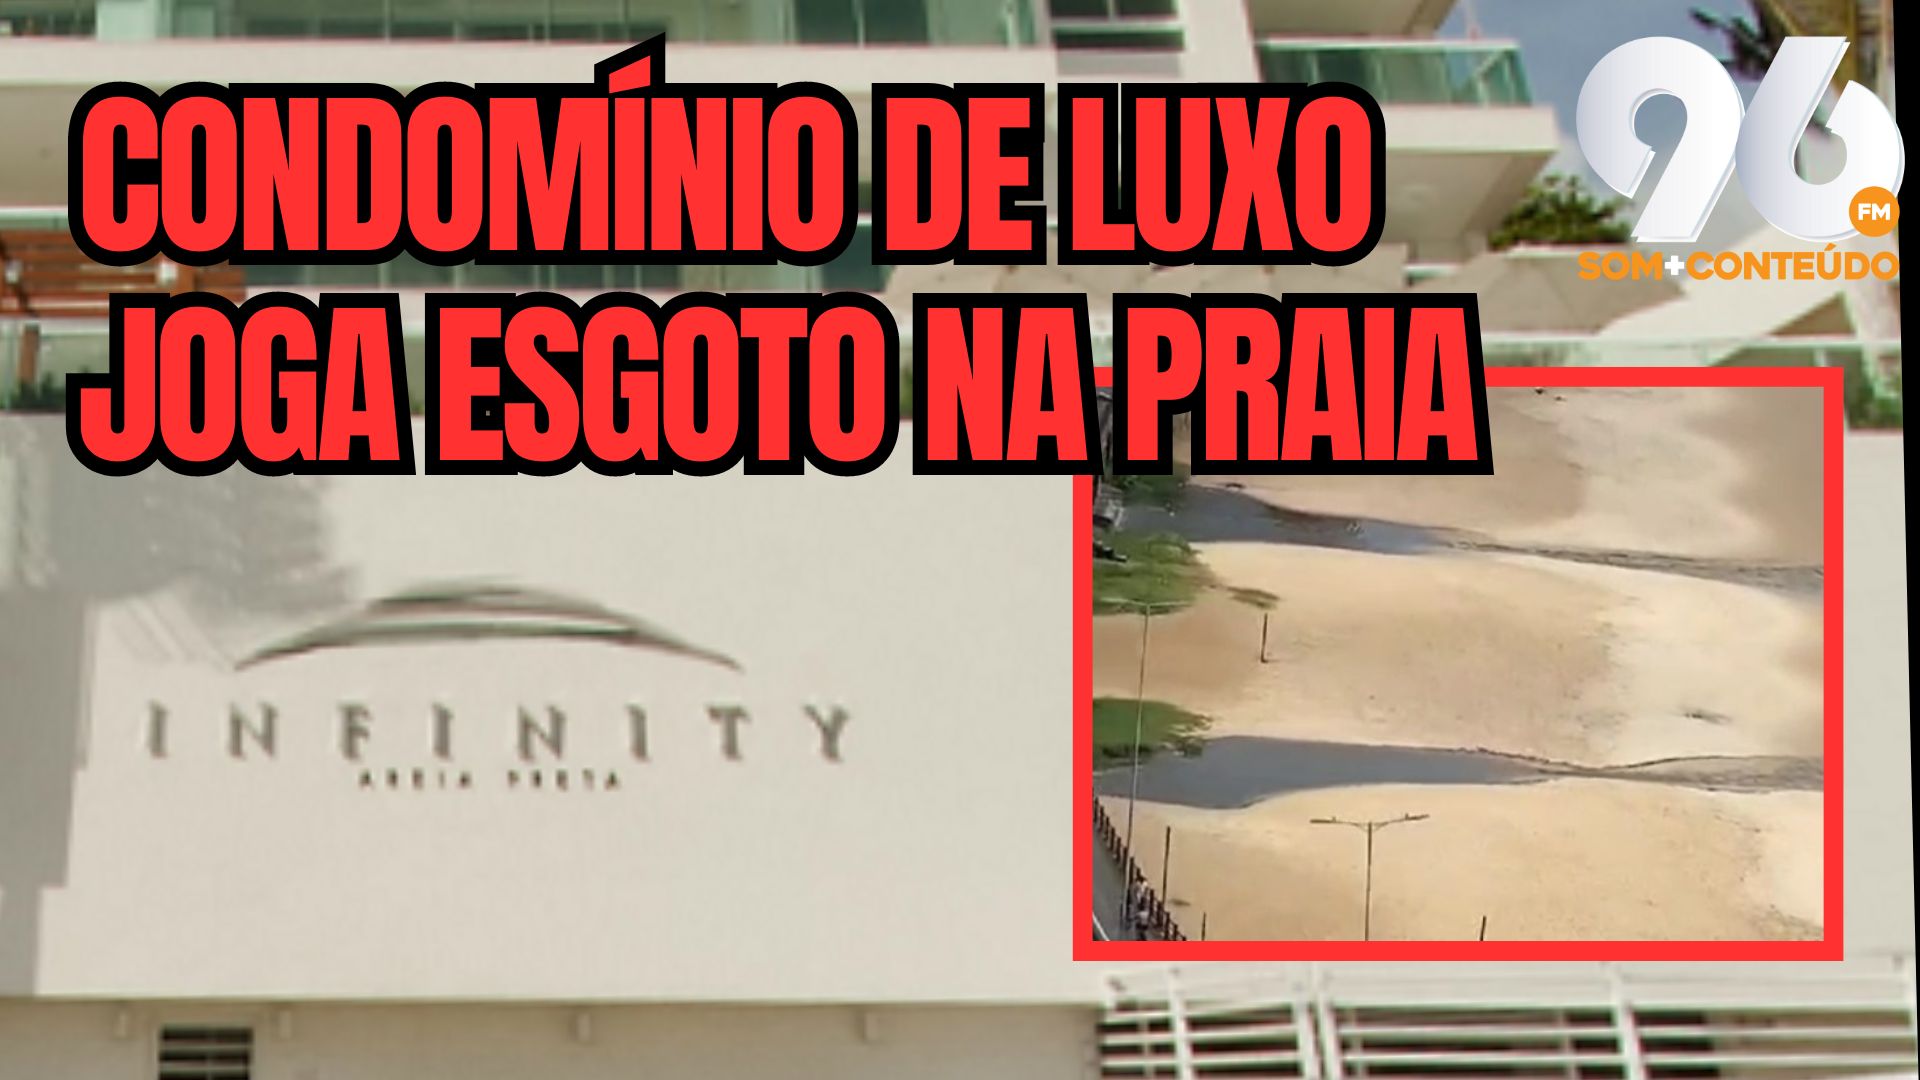 [VIDEO] 96 descobre condomínio de luxo que está jogando esgoto em Areia Preta